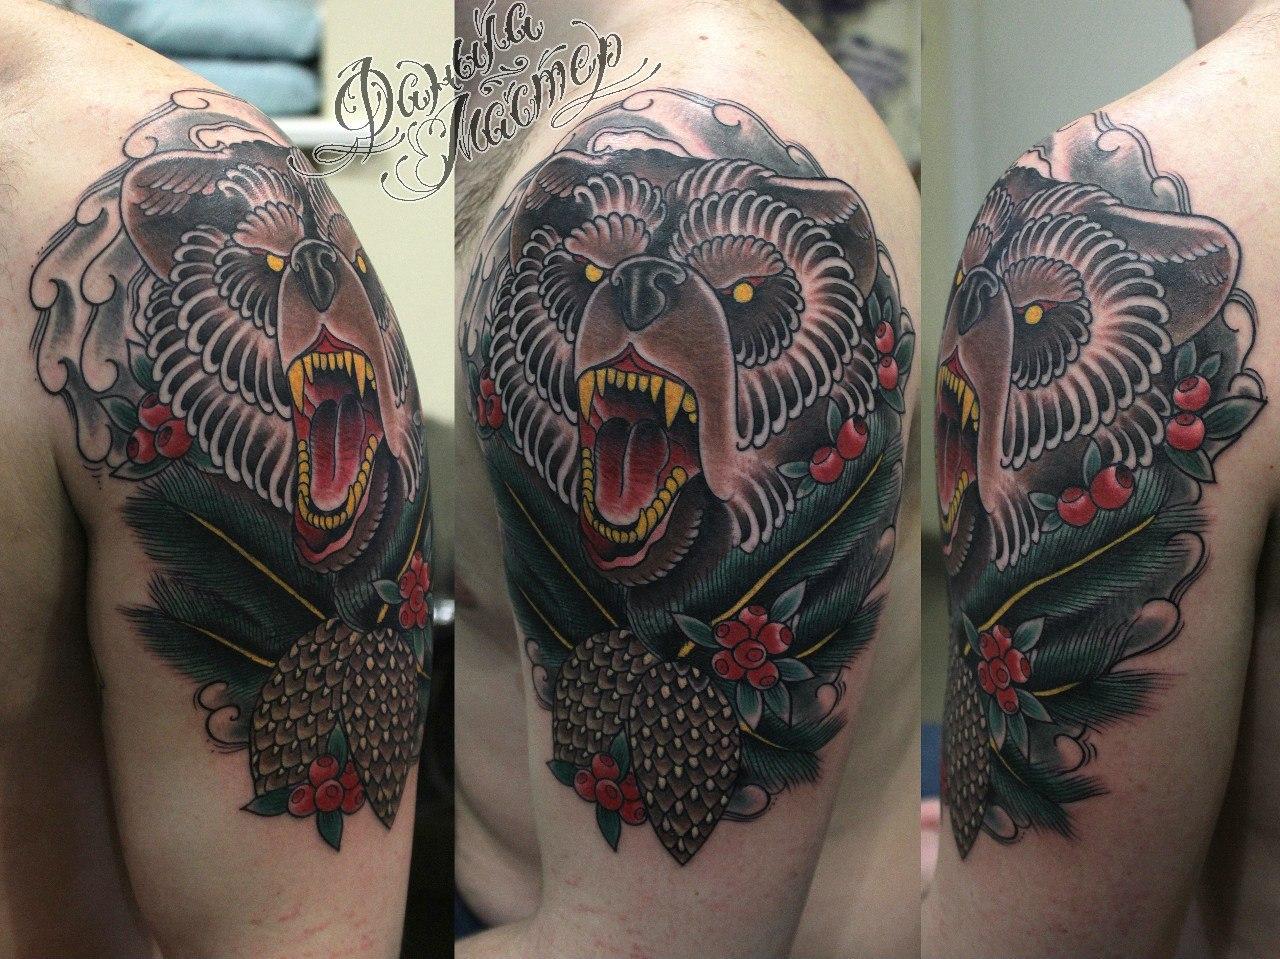 Художественная татуировка "Медведь" от Данилы-мастера.